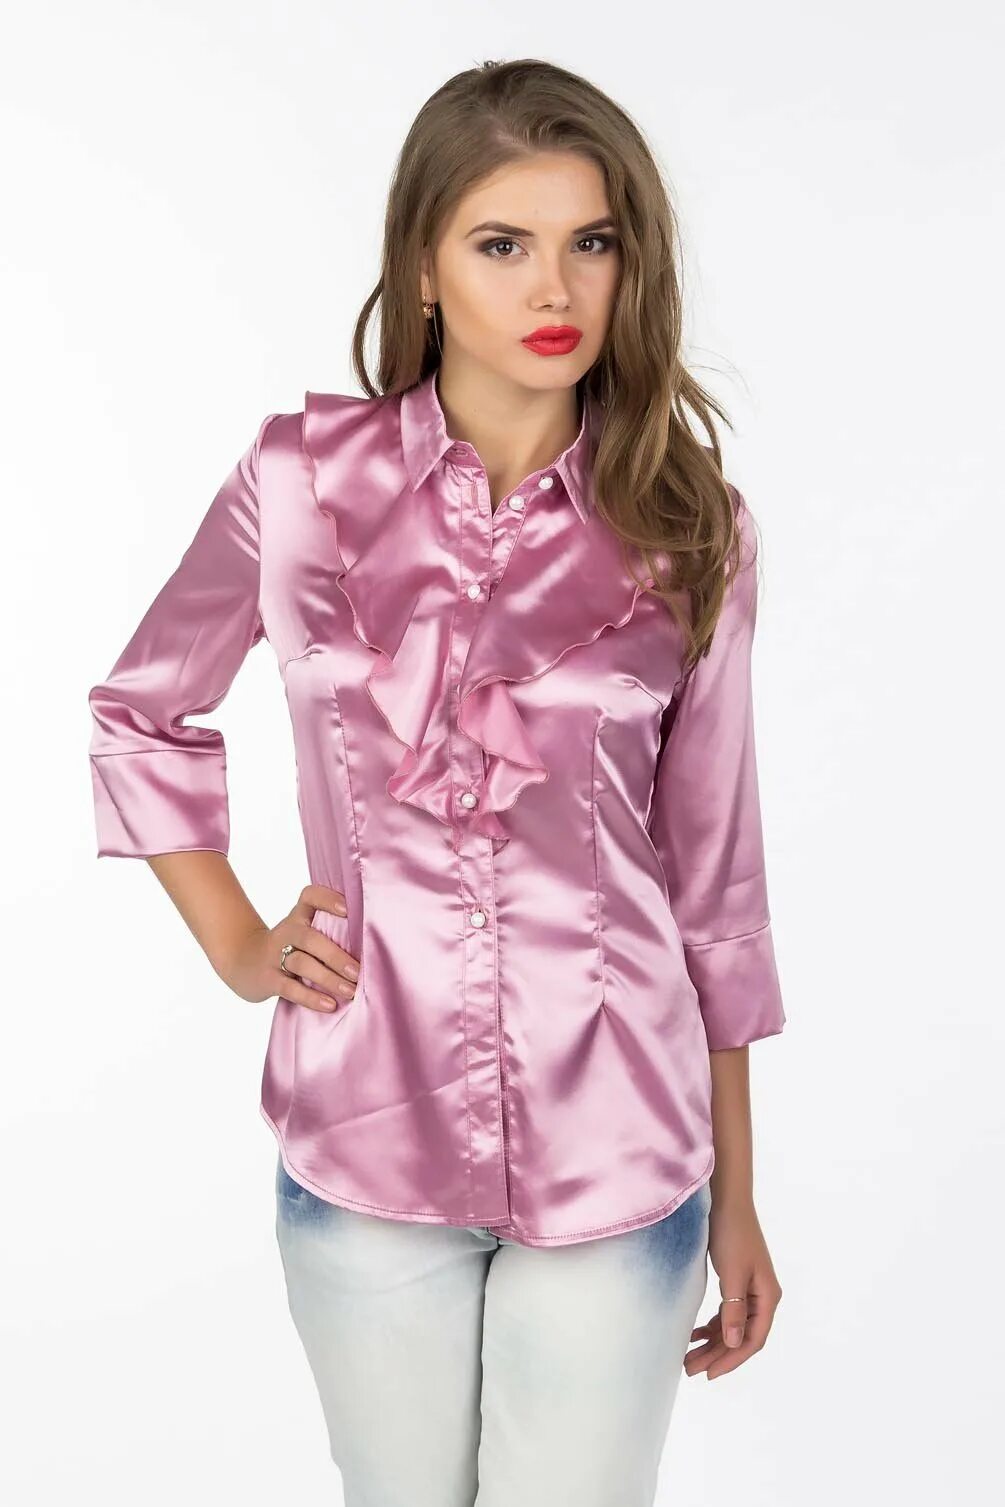 Блузка женская шелк. Блуза ЛП-22180. Атласная блузка. Блузка женская атласная. Шелковая блузка.